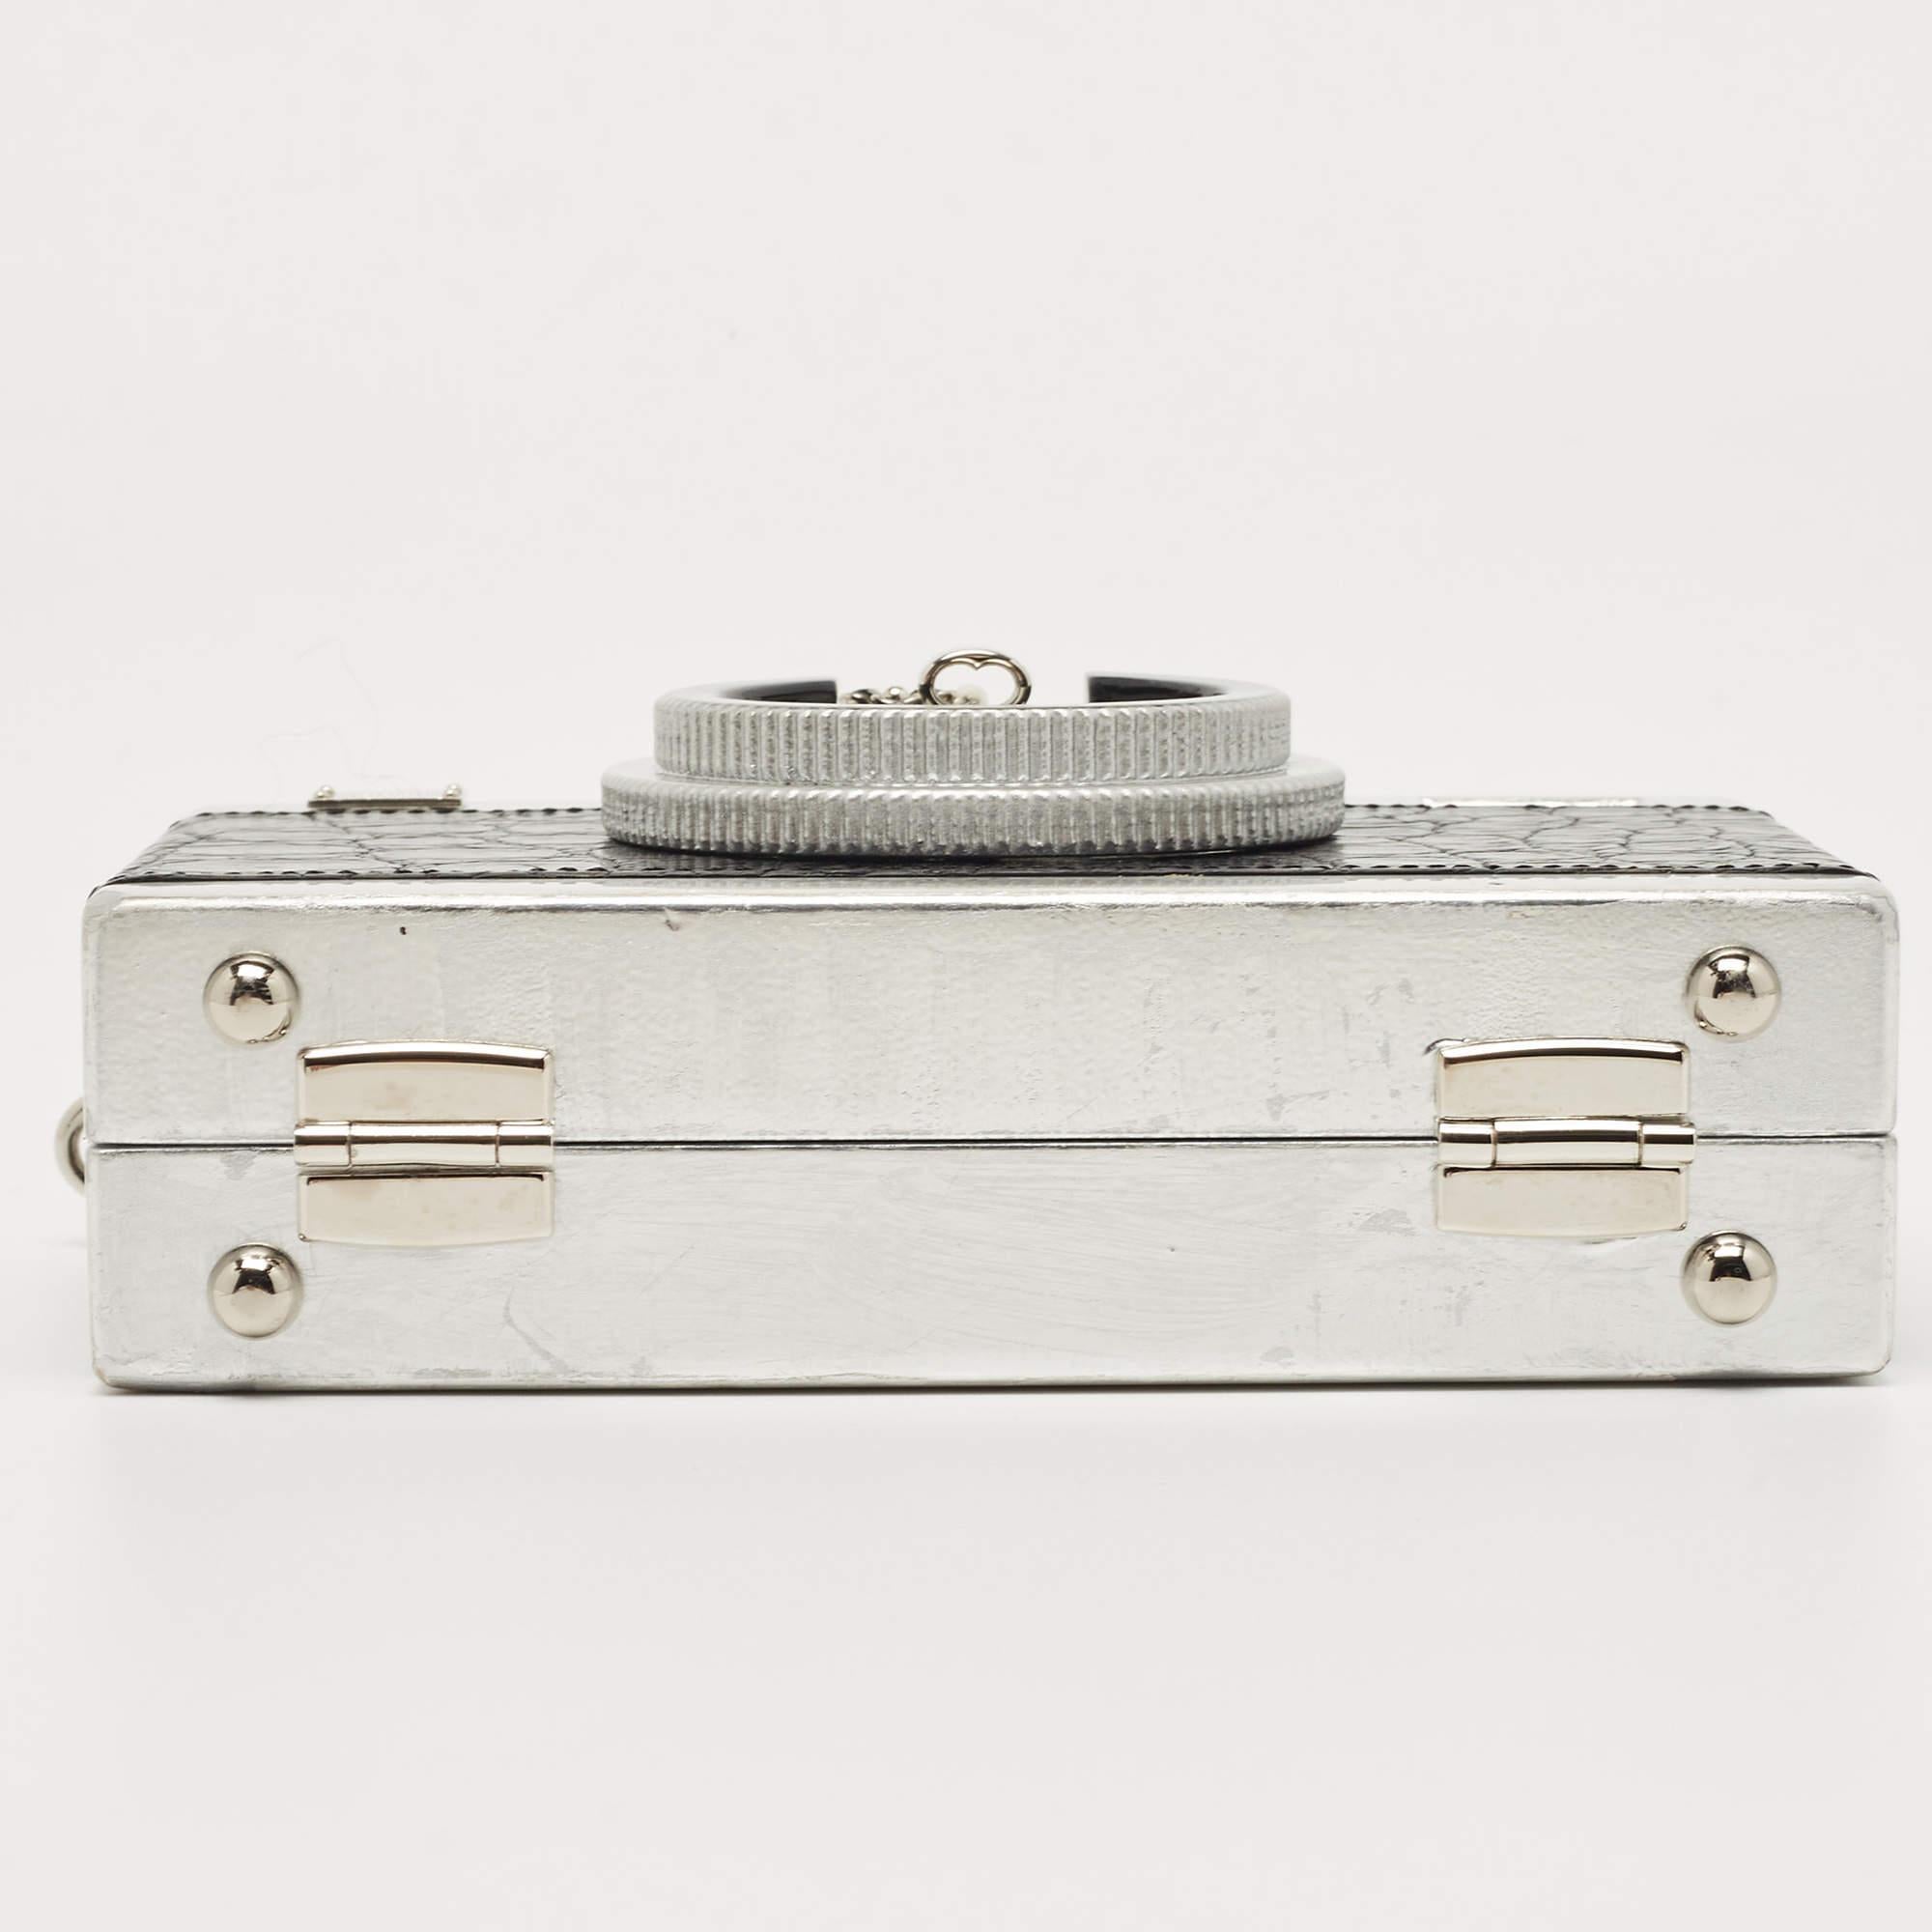 Dolce & Gabbana Black/Silver Croc Embossed and Leather Camera Case Shoulder Bag 4